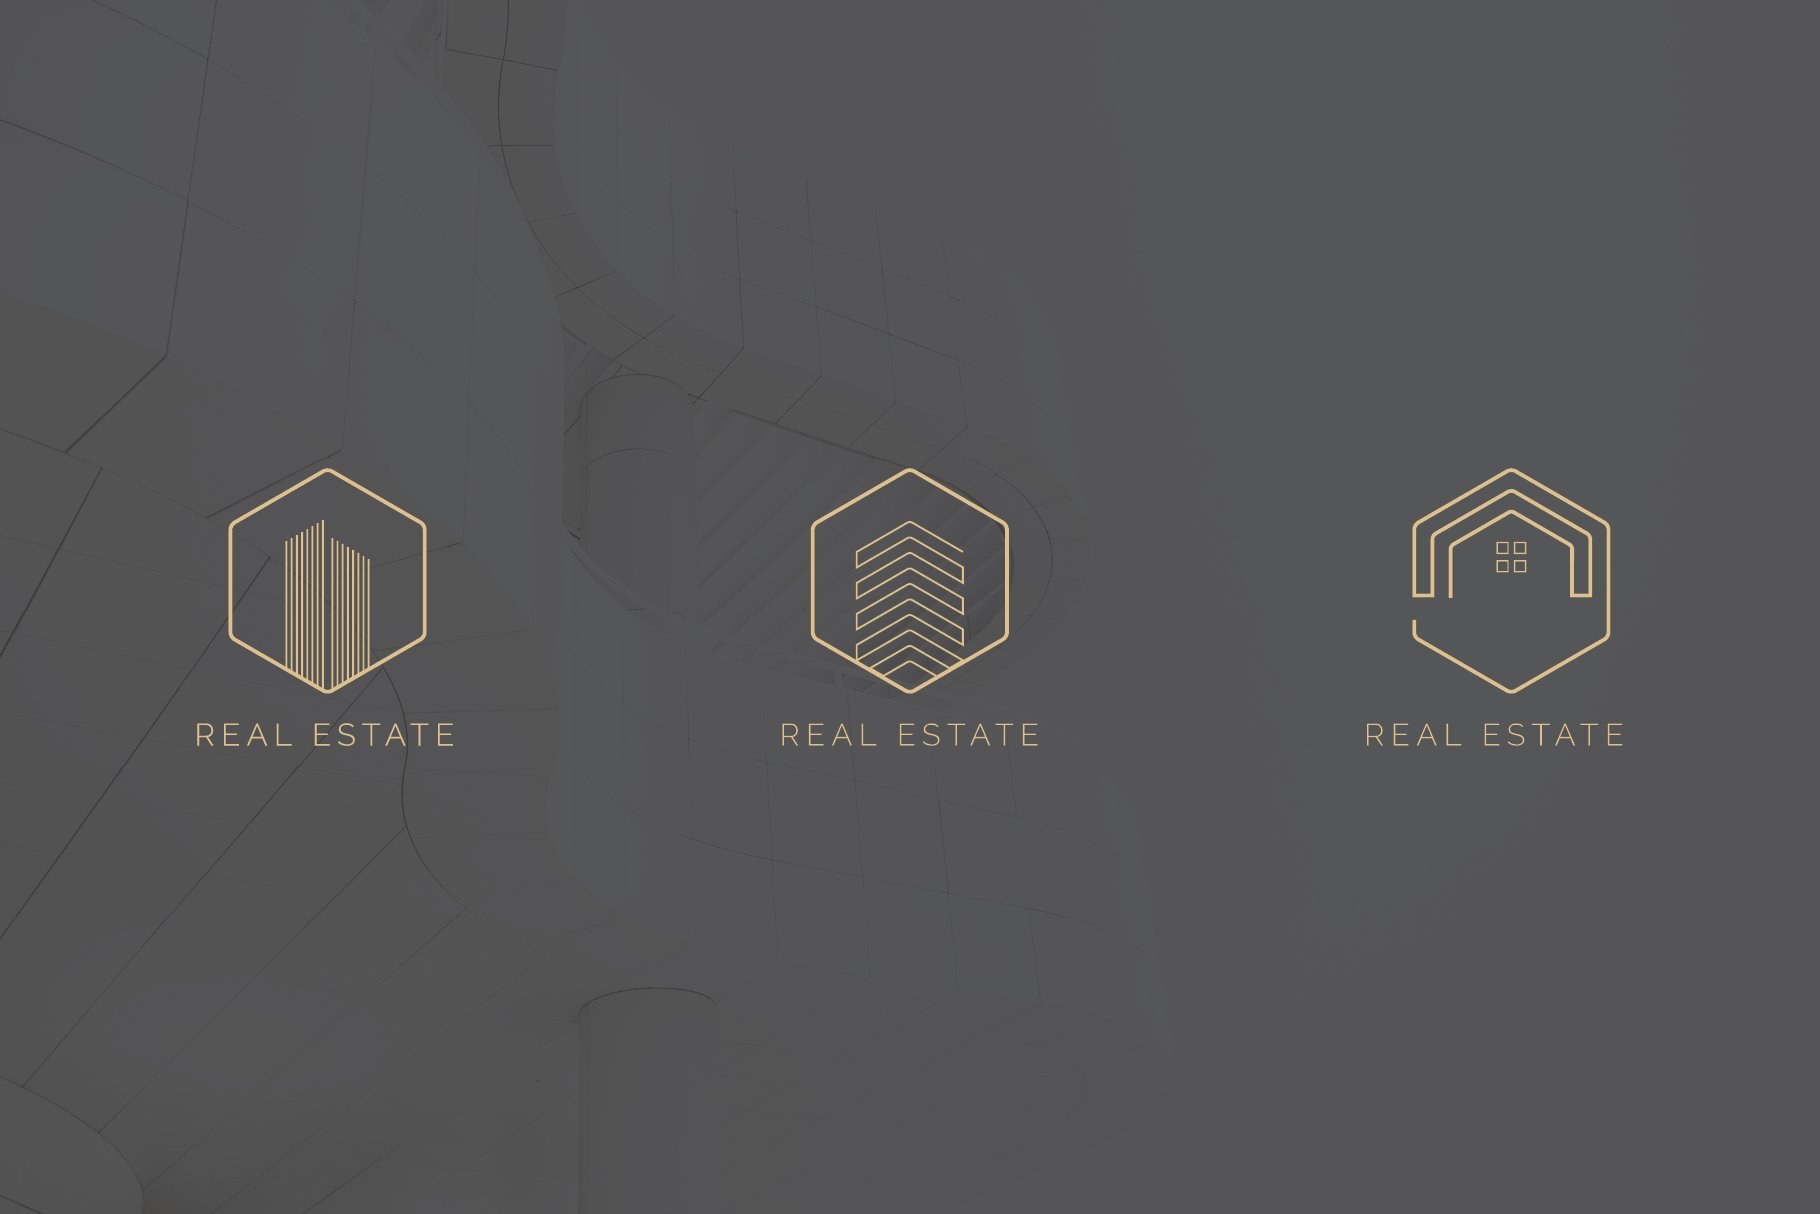 Geometric gold real estate logos.